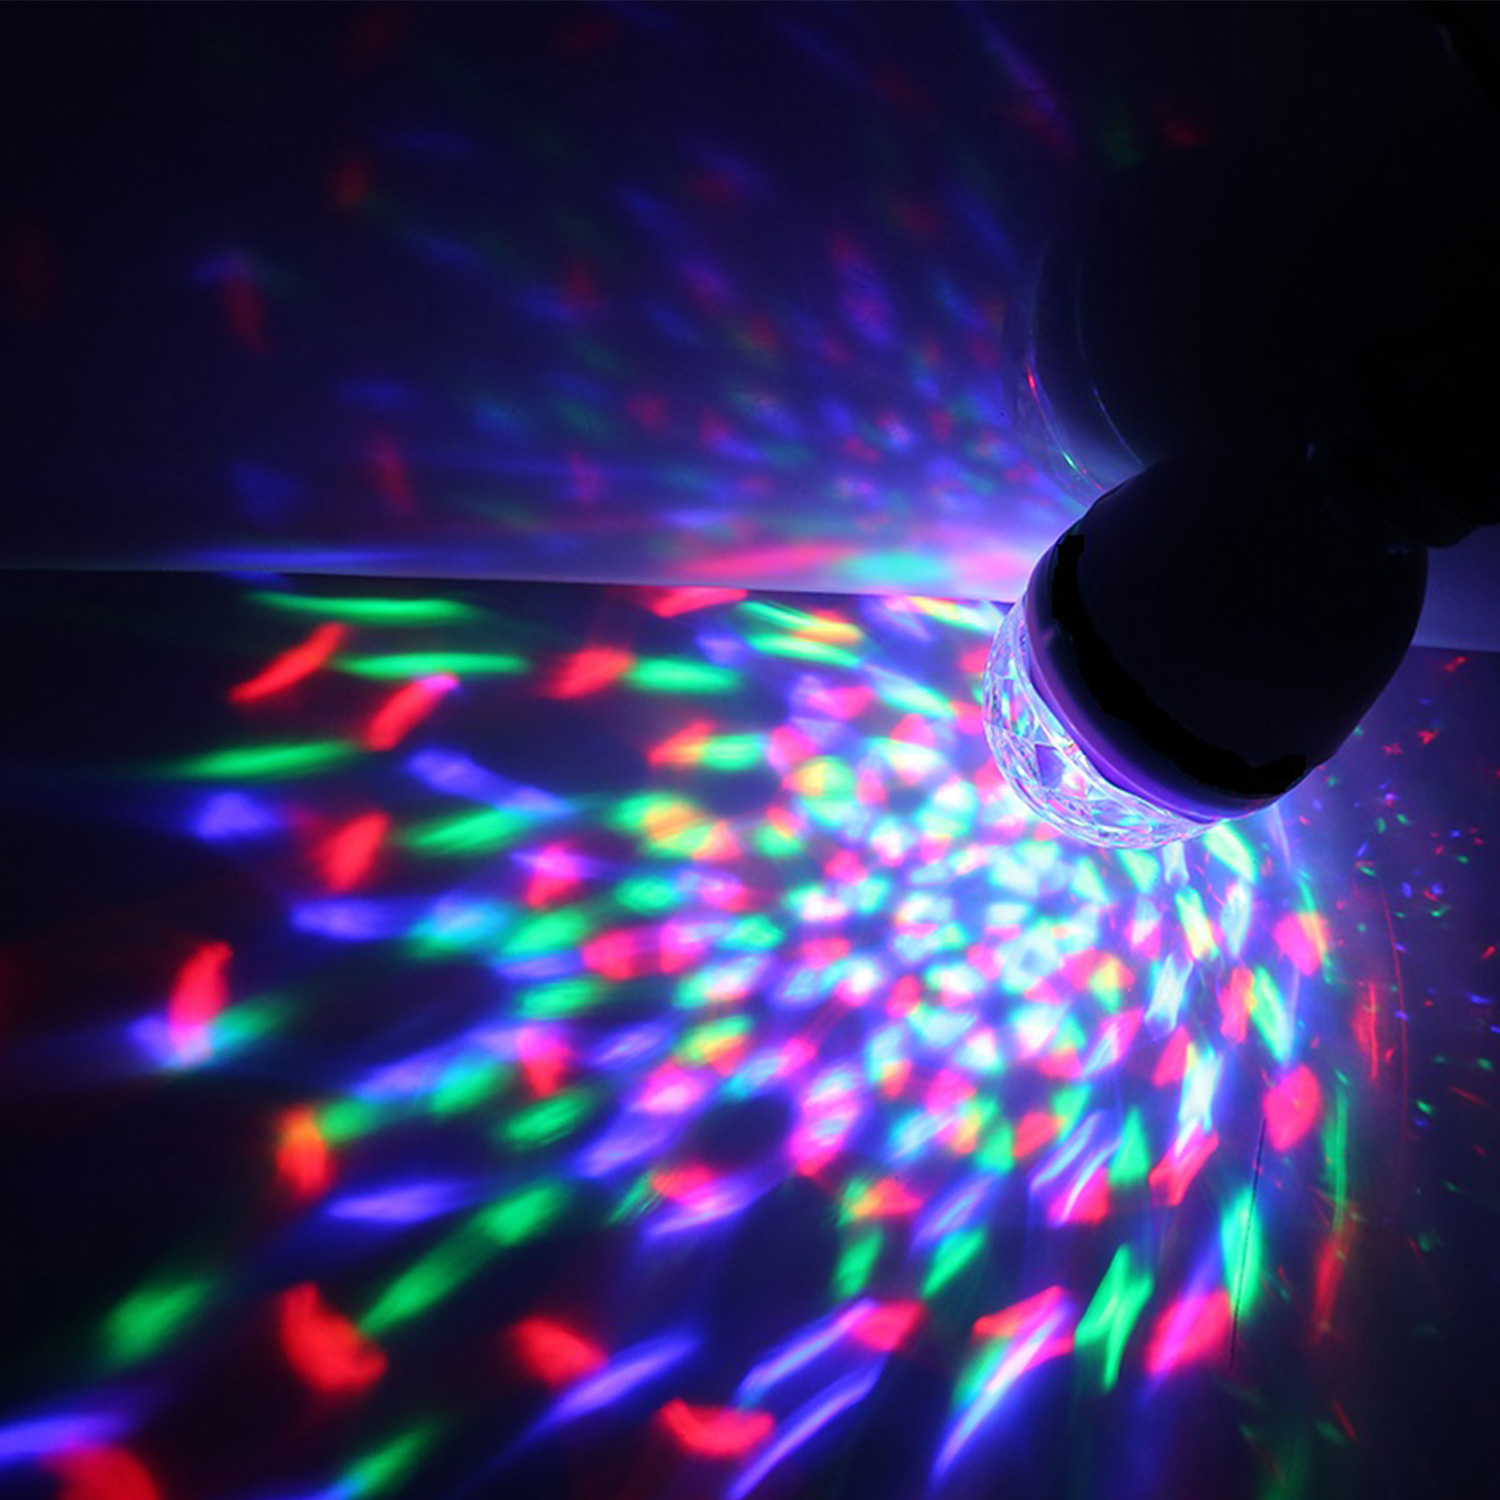 Kaufen Sie PartyFunLights - LED-Atmosphärenlampe RGB - 16 Farben - mit  Fernbedienung - E27-Fassung zu Großhandelspreisen